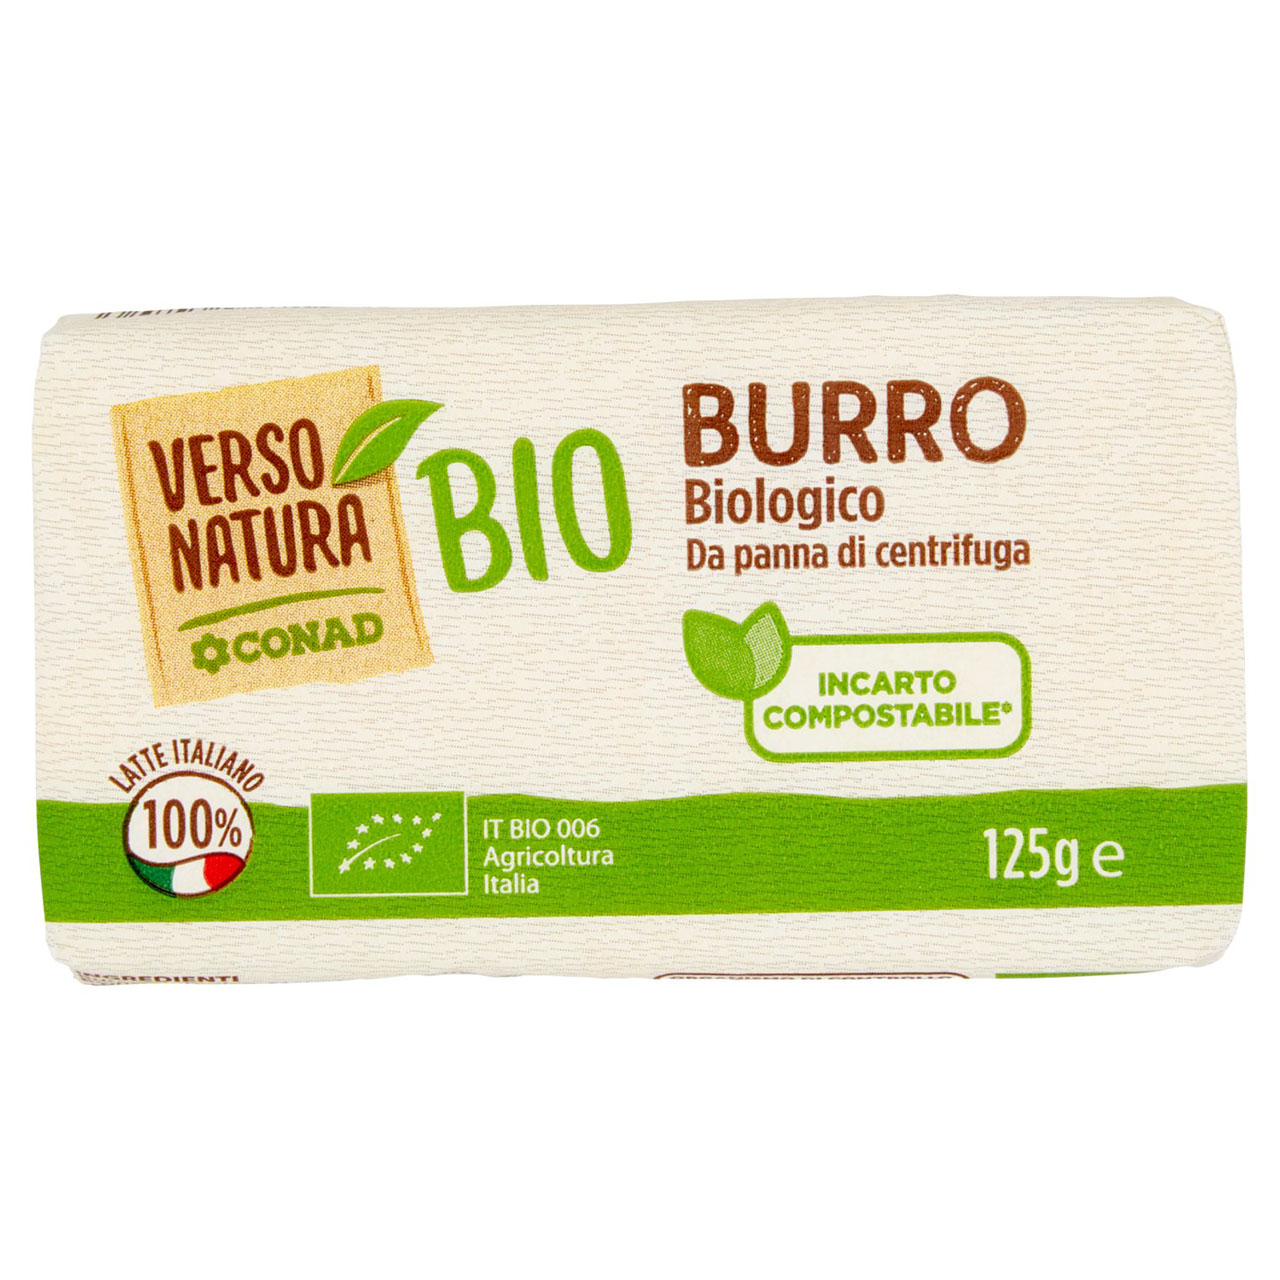 Burro Biologico 125 g Conad Verso Natura Bio